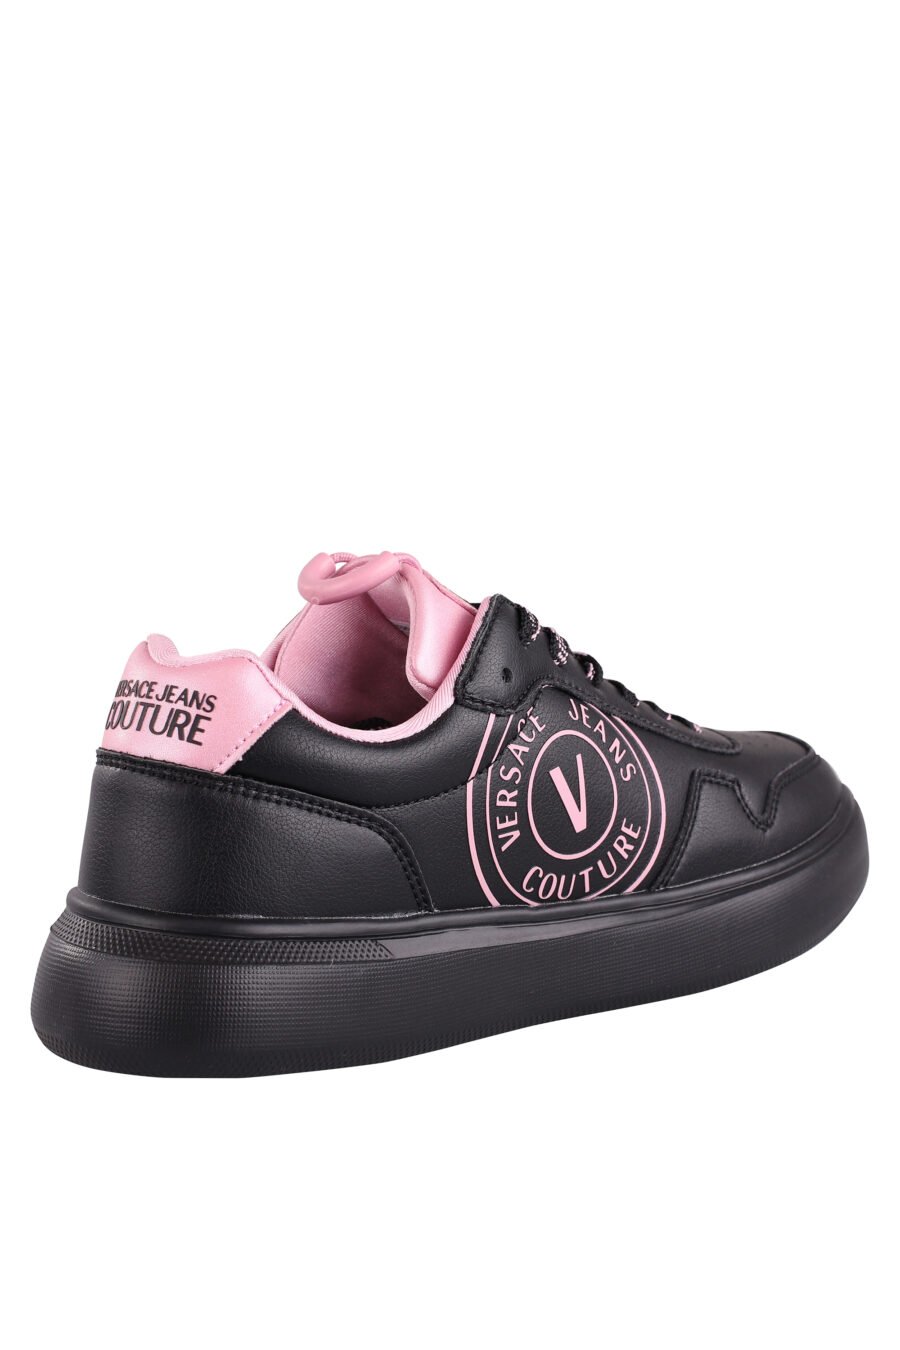 Zapatillas negras con detalles y logo rosa - IMG 9061